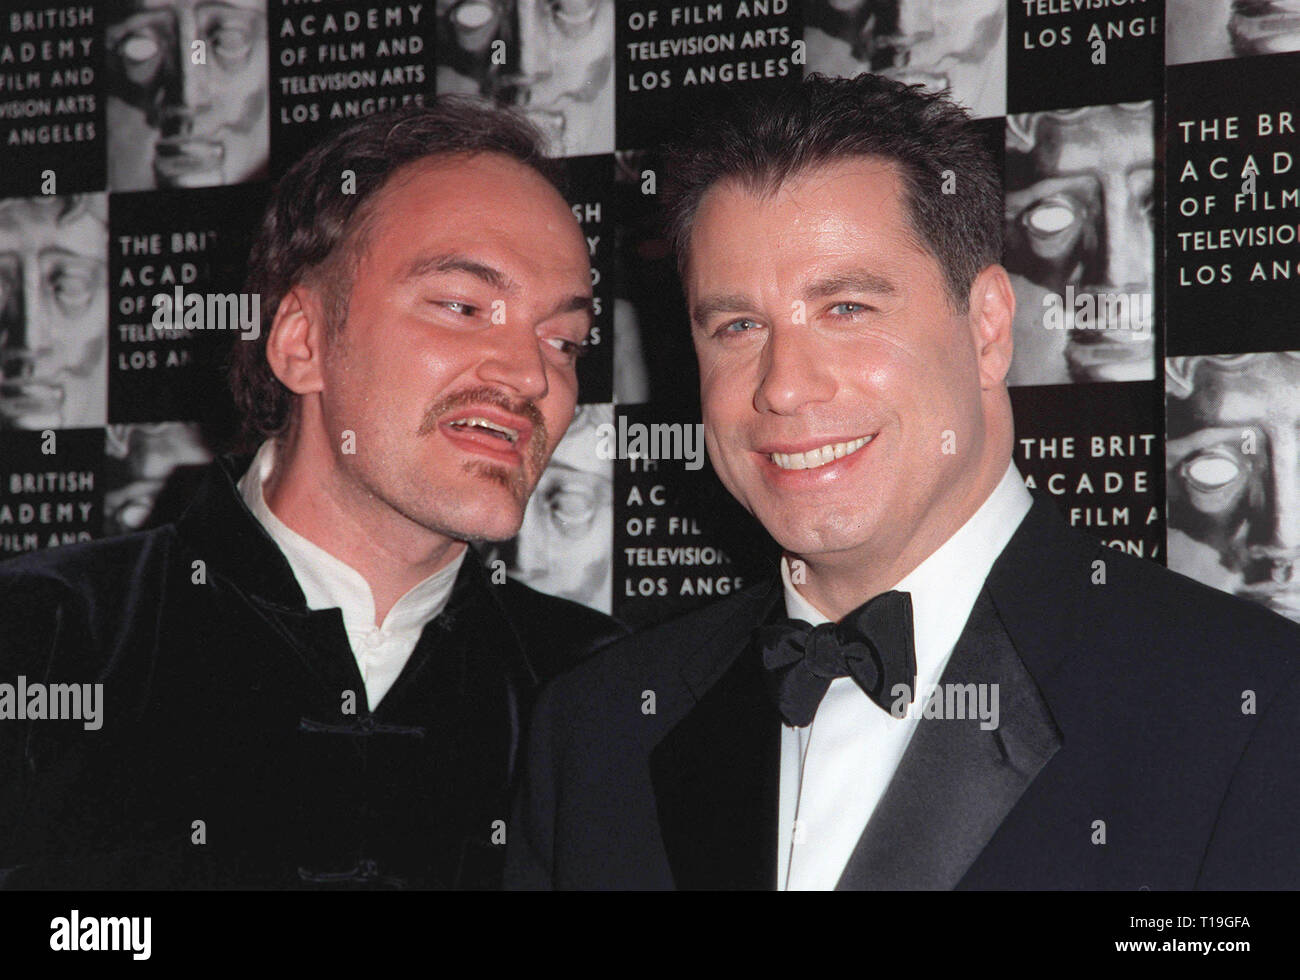 LOS ANGELES, CA - 15 de octubre de 1998: el actor John Travolta (derecha) y  el director Quentin Tarantino en homenaje en Beverly Hills, donde Travolta  fue honrado con el premio anual